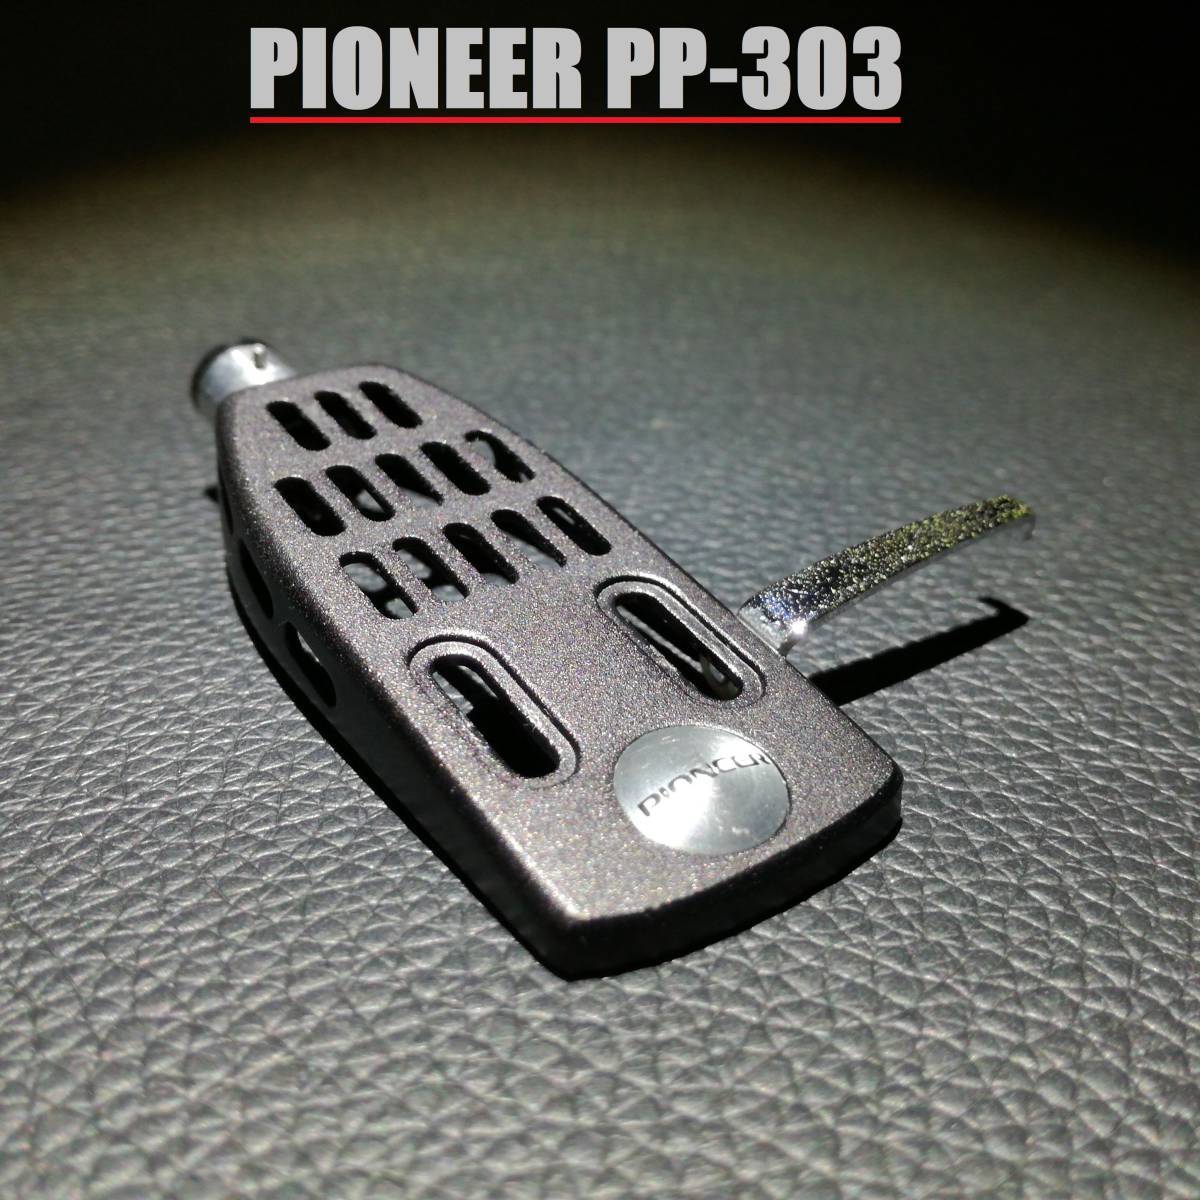 PIONEER PP-303 / パイオニア アルミプレス ヘッドシェル 7gの画像1